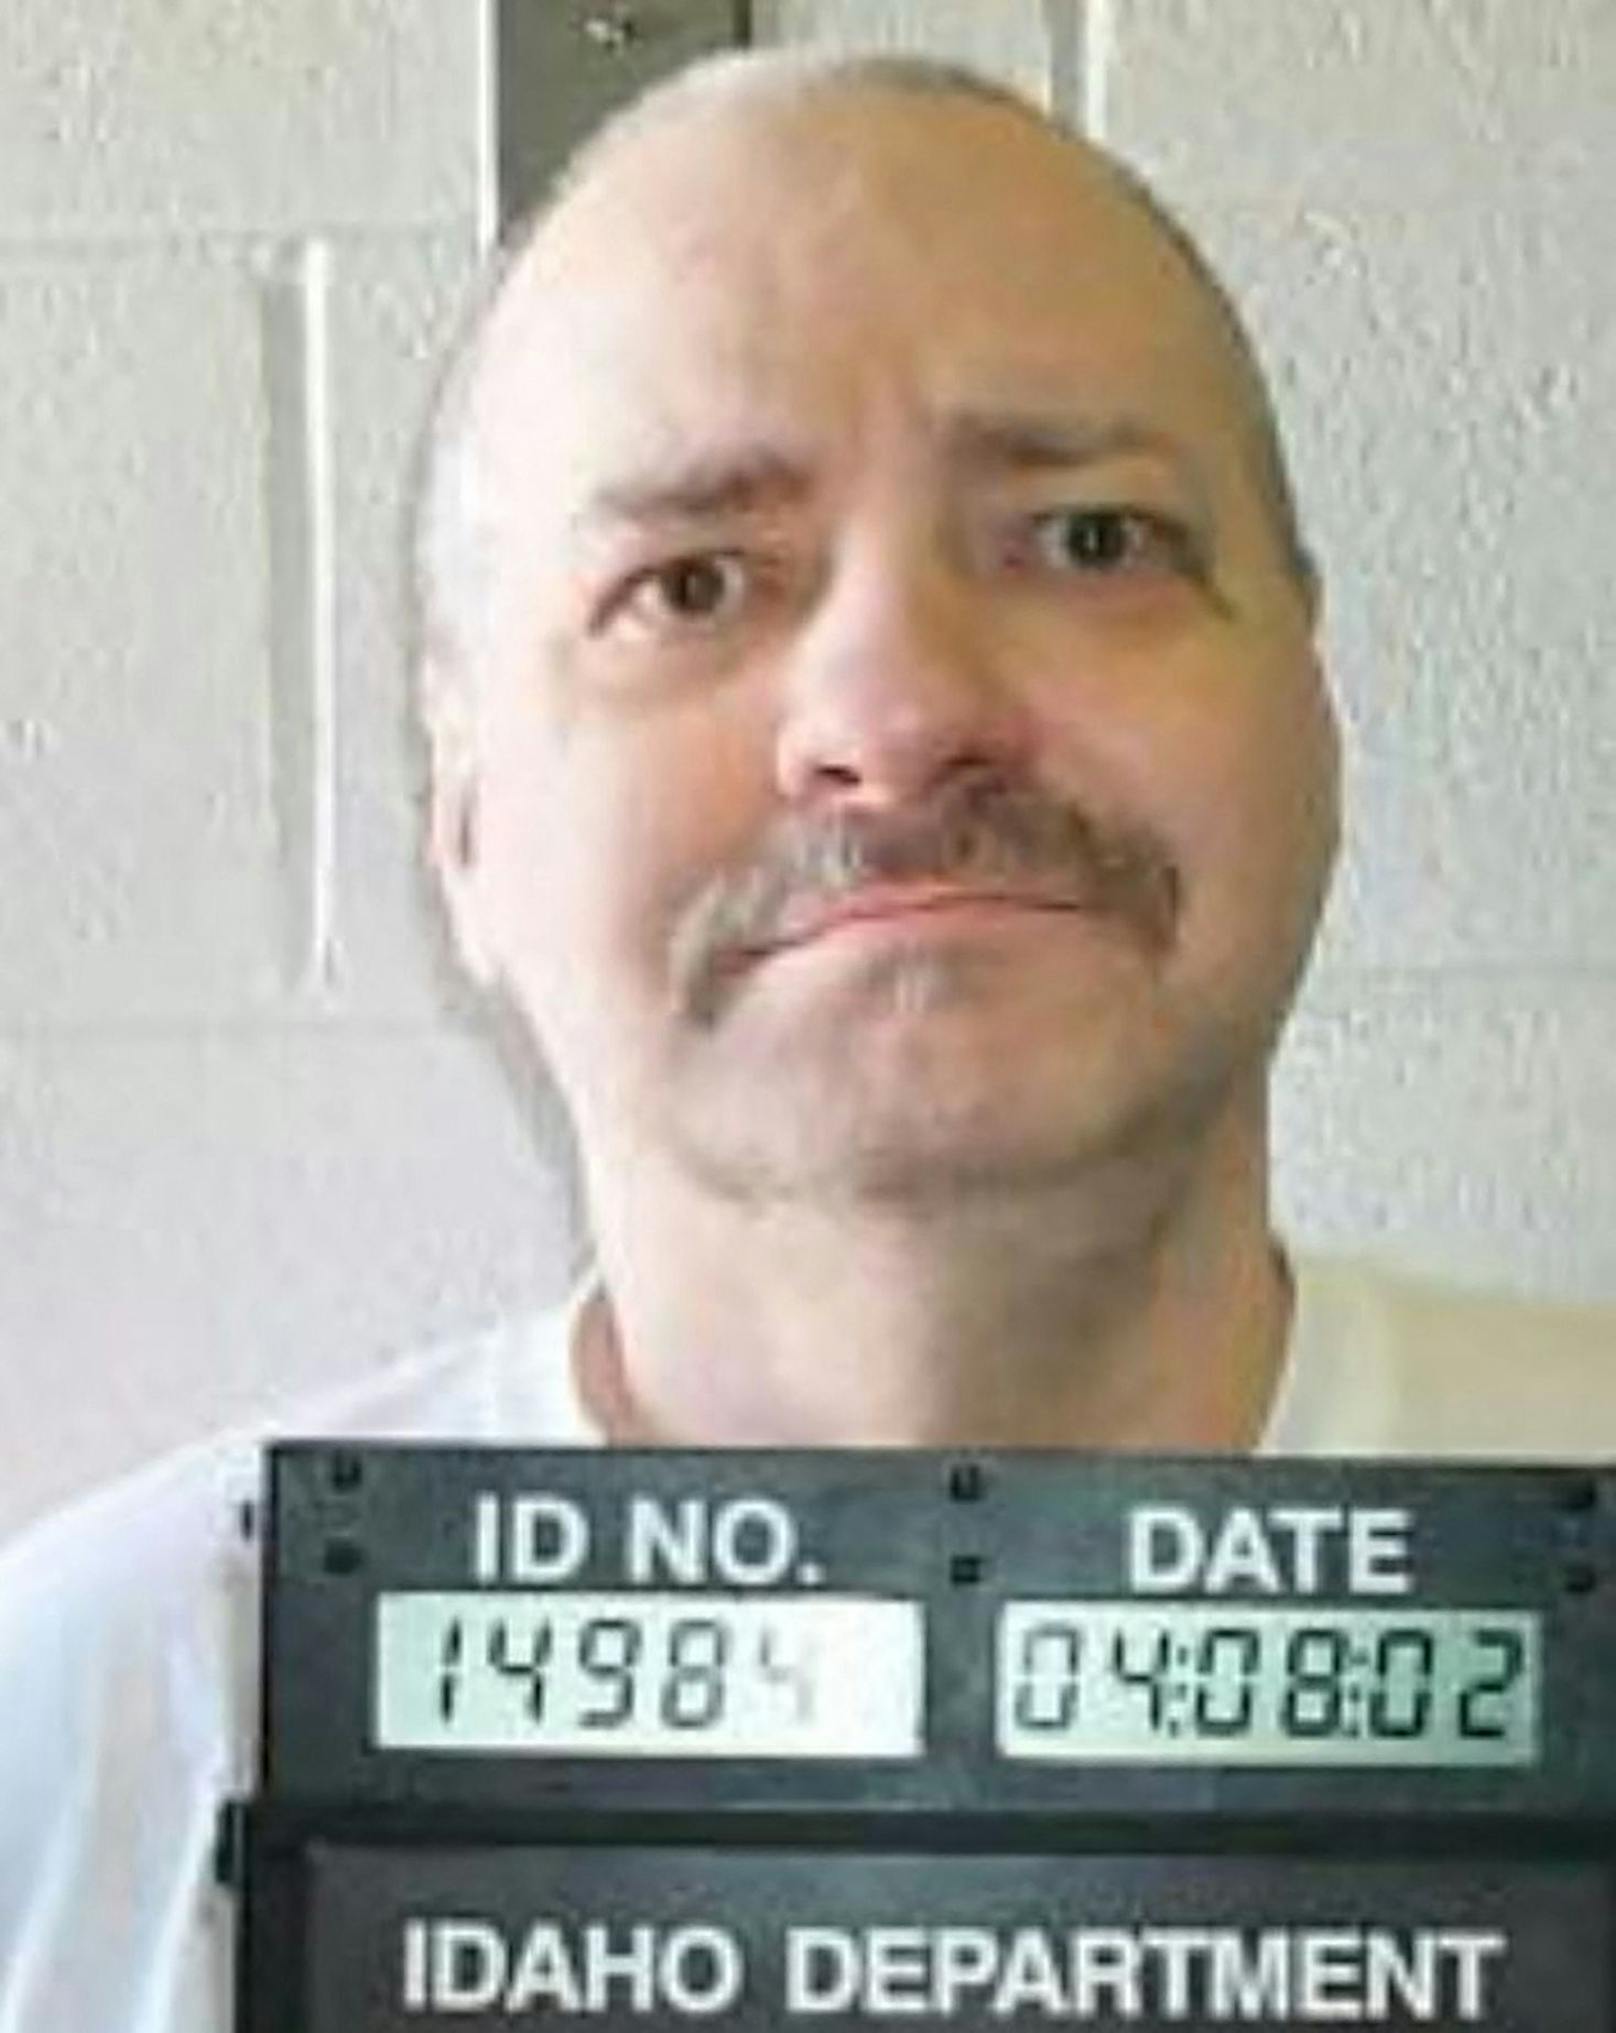 Der Insasse Thomas Eugene Creech sollte am 28. Februar hingerichtet werden, nachdem er über fünfzig Jahre hinter Gittern saß.